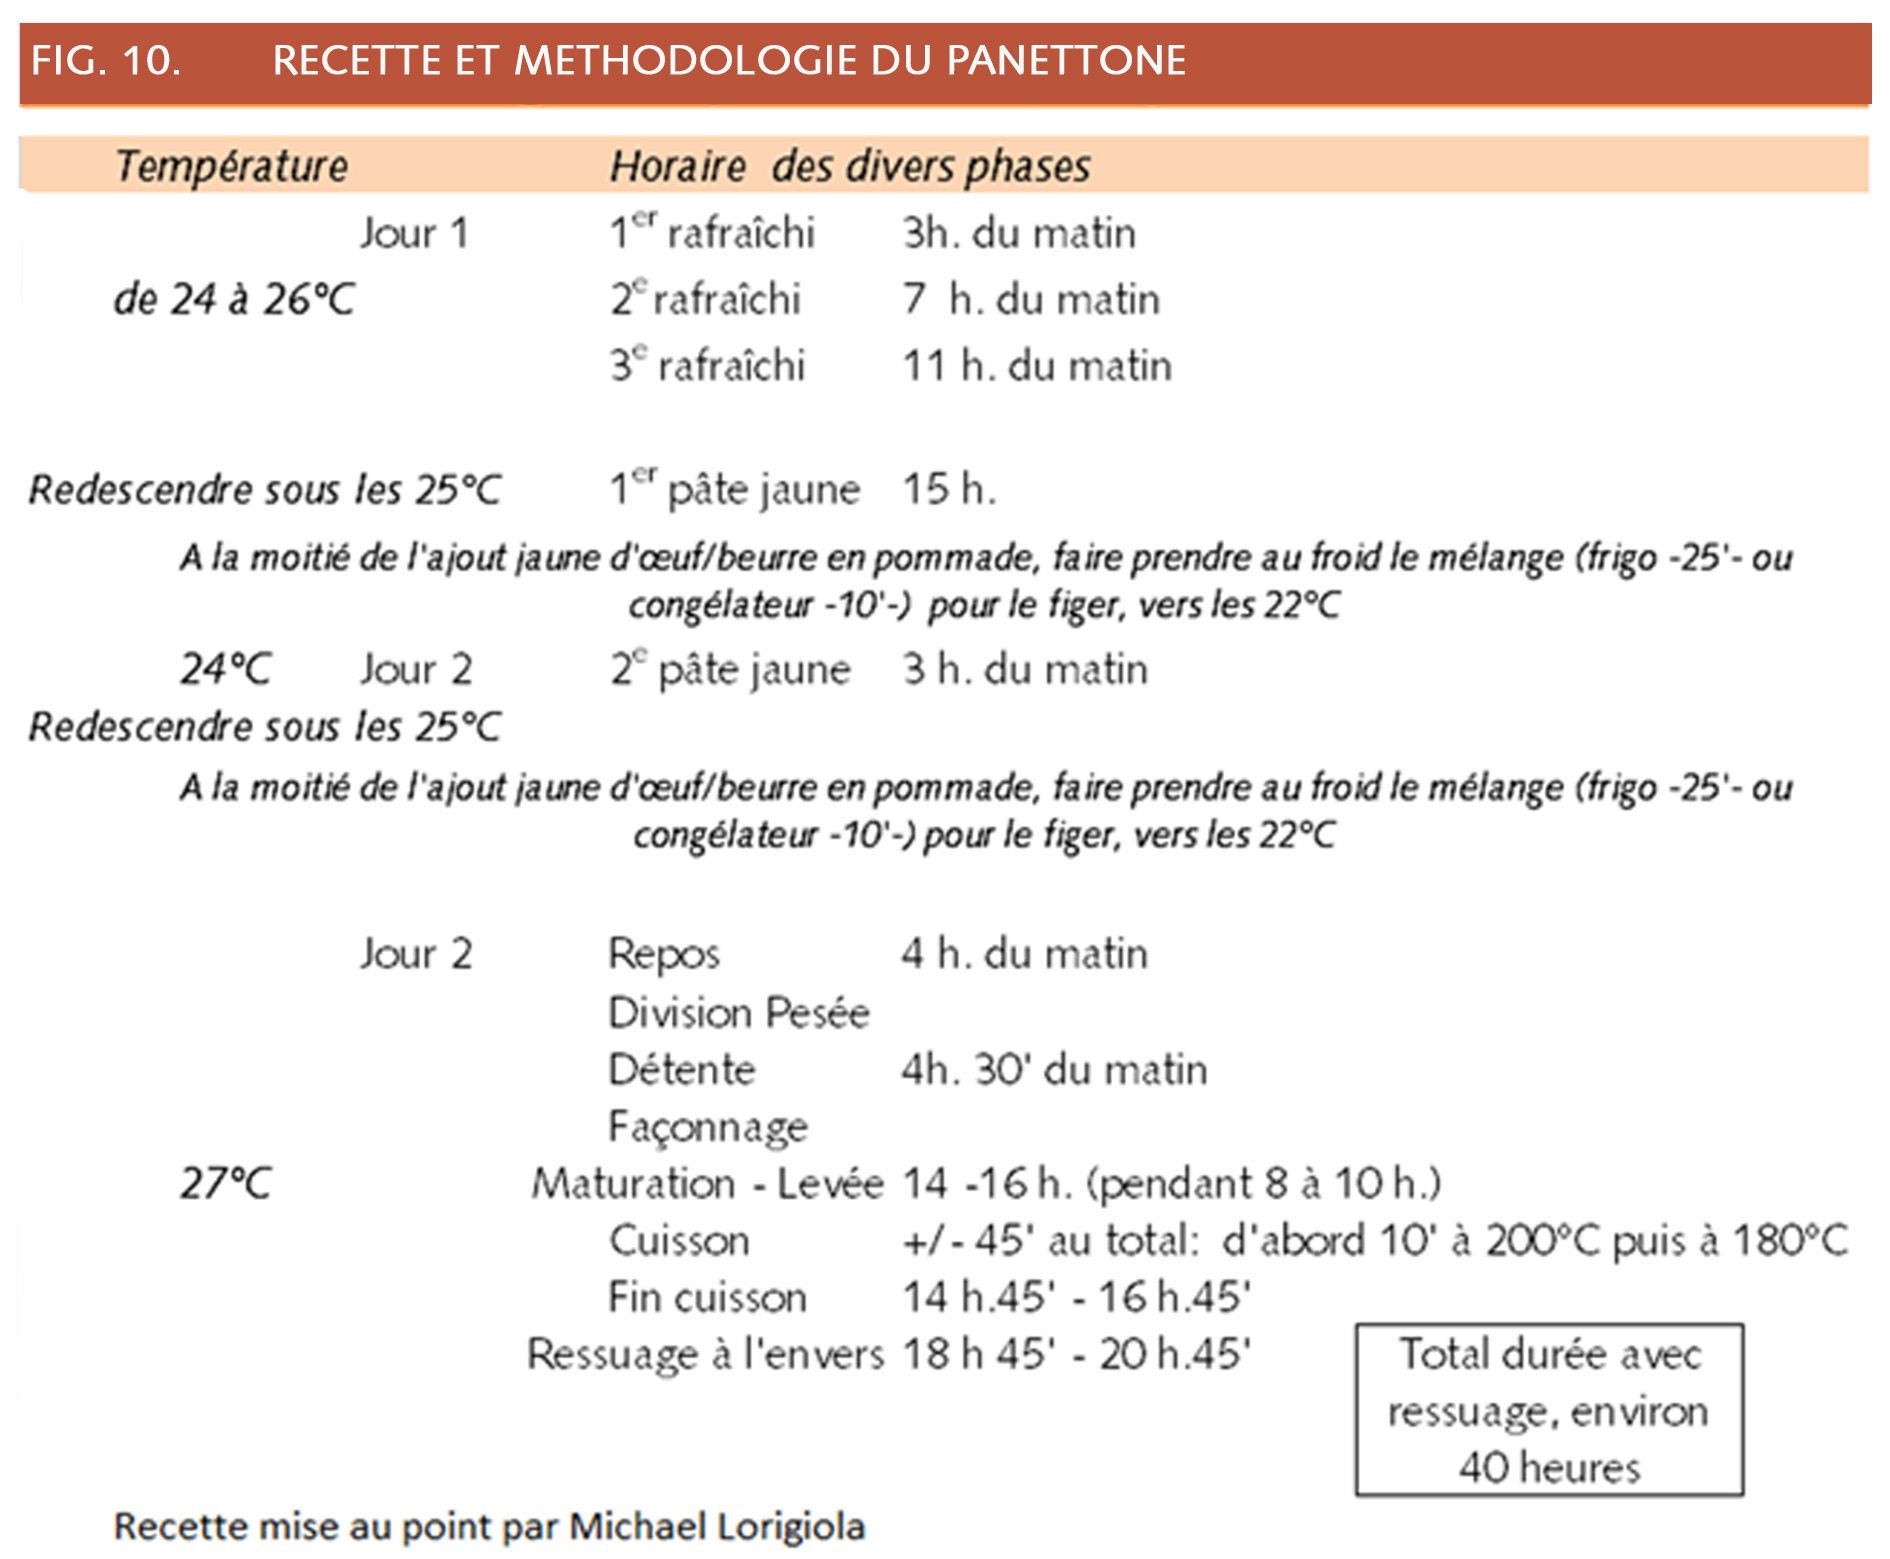 19_200_Methodologie du panettone.jpg